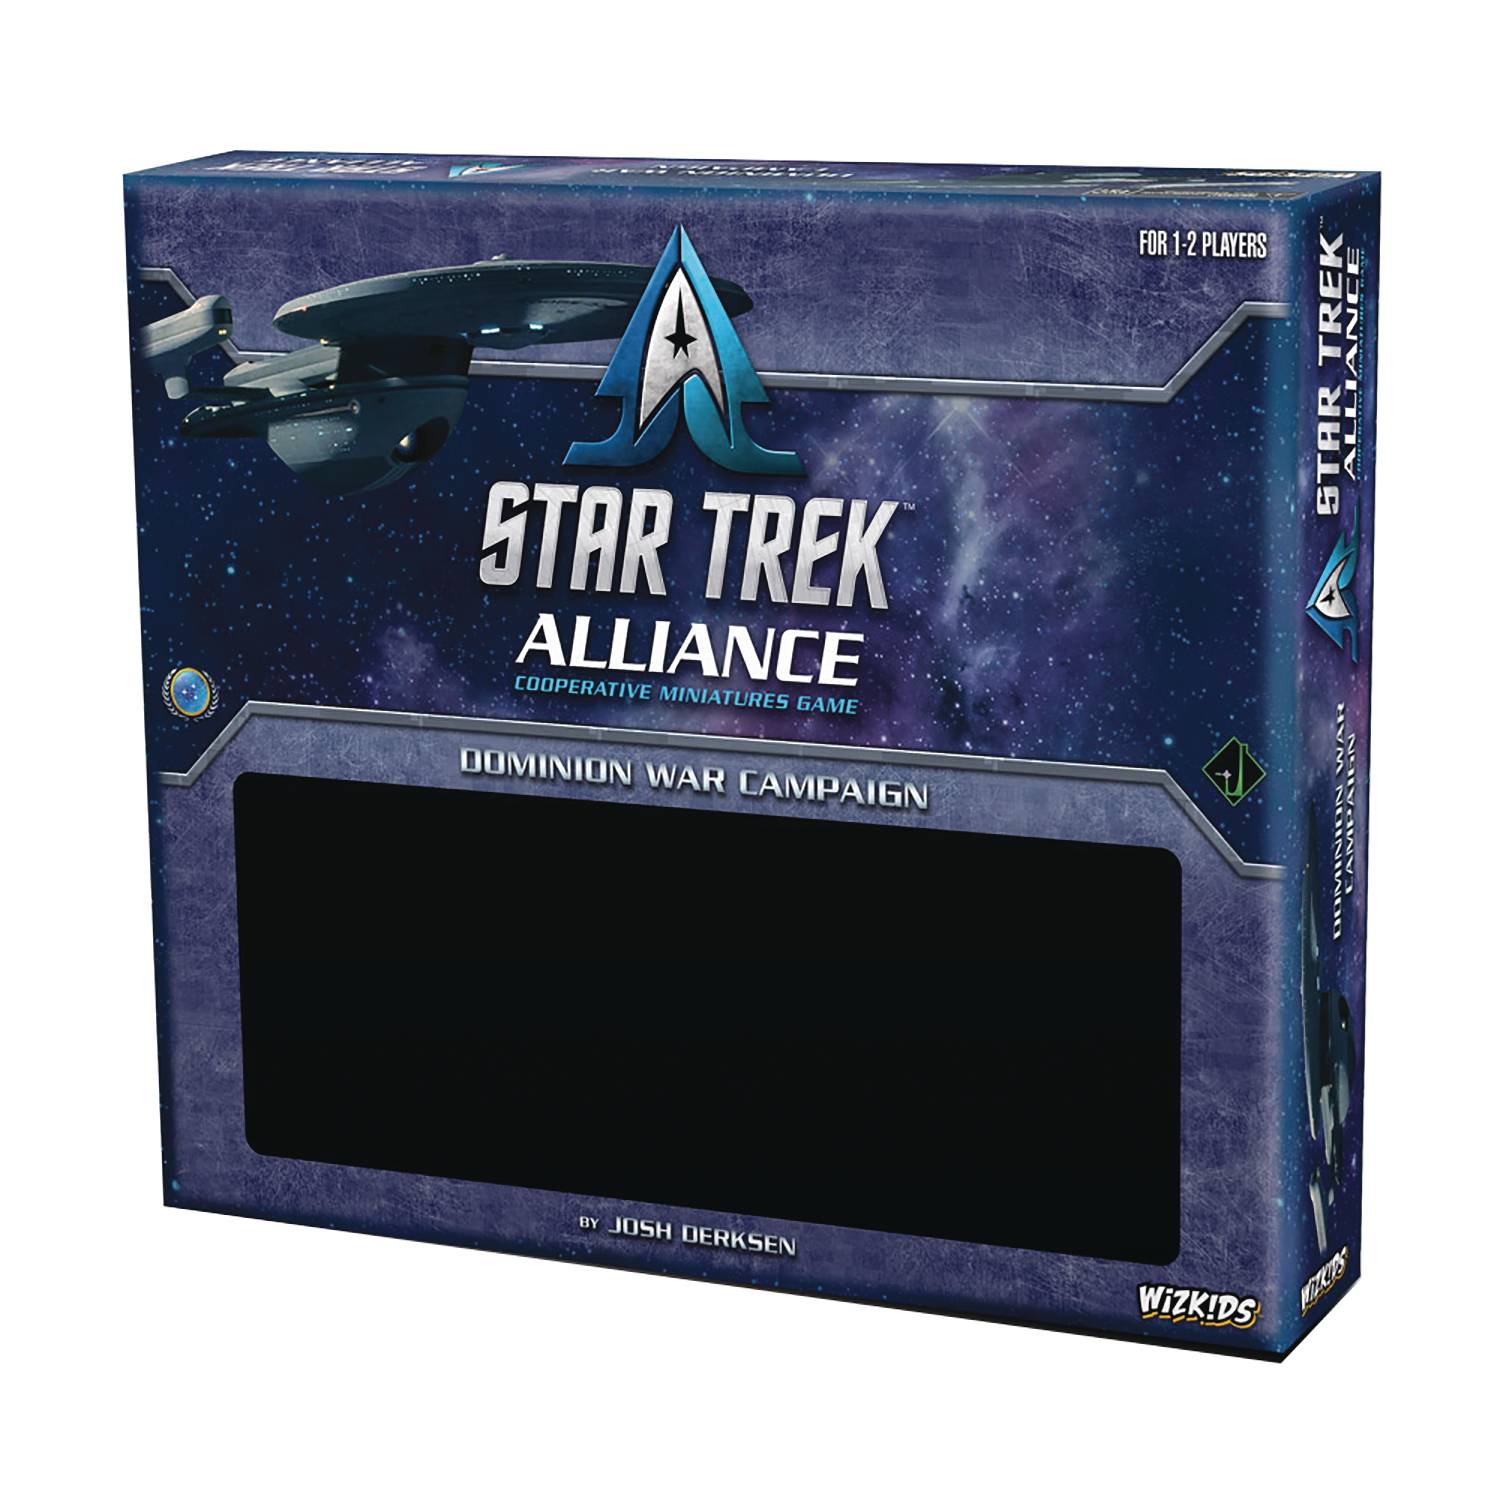 Star Trek Alliance Dominion War Campaign Board Game